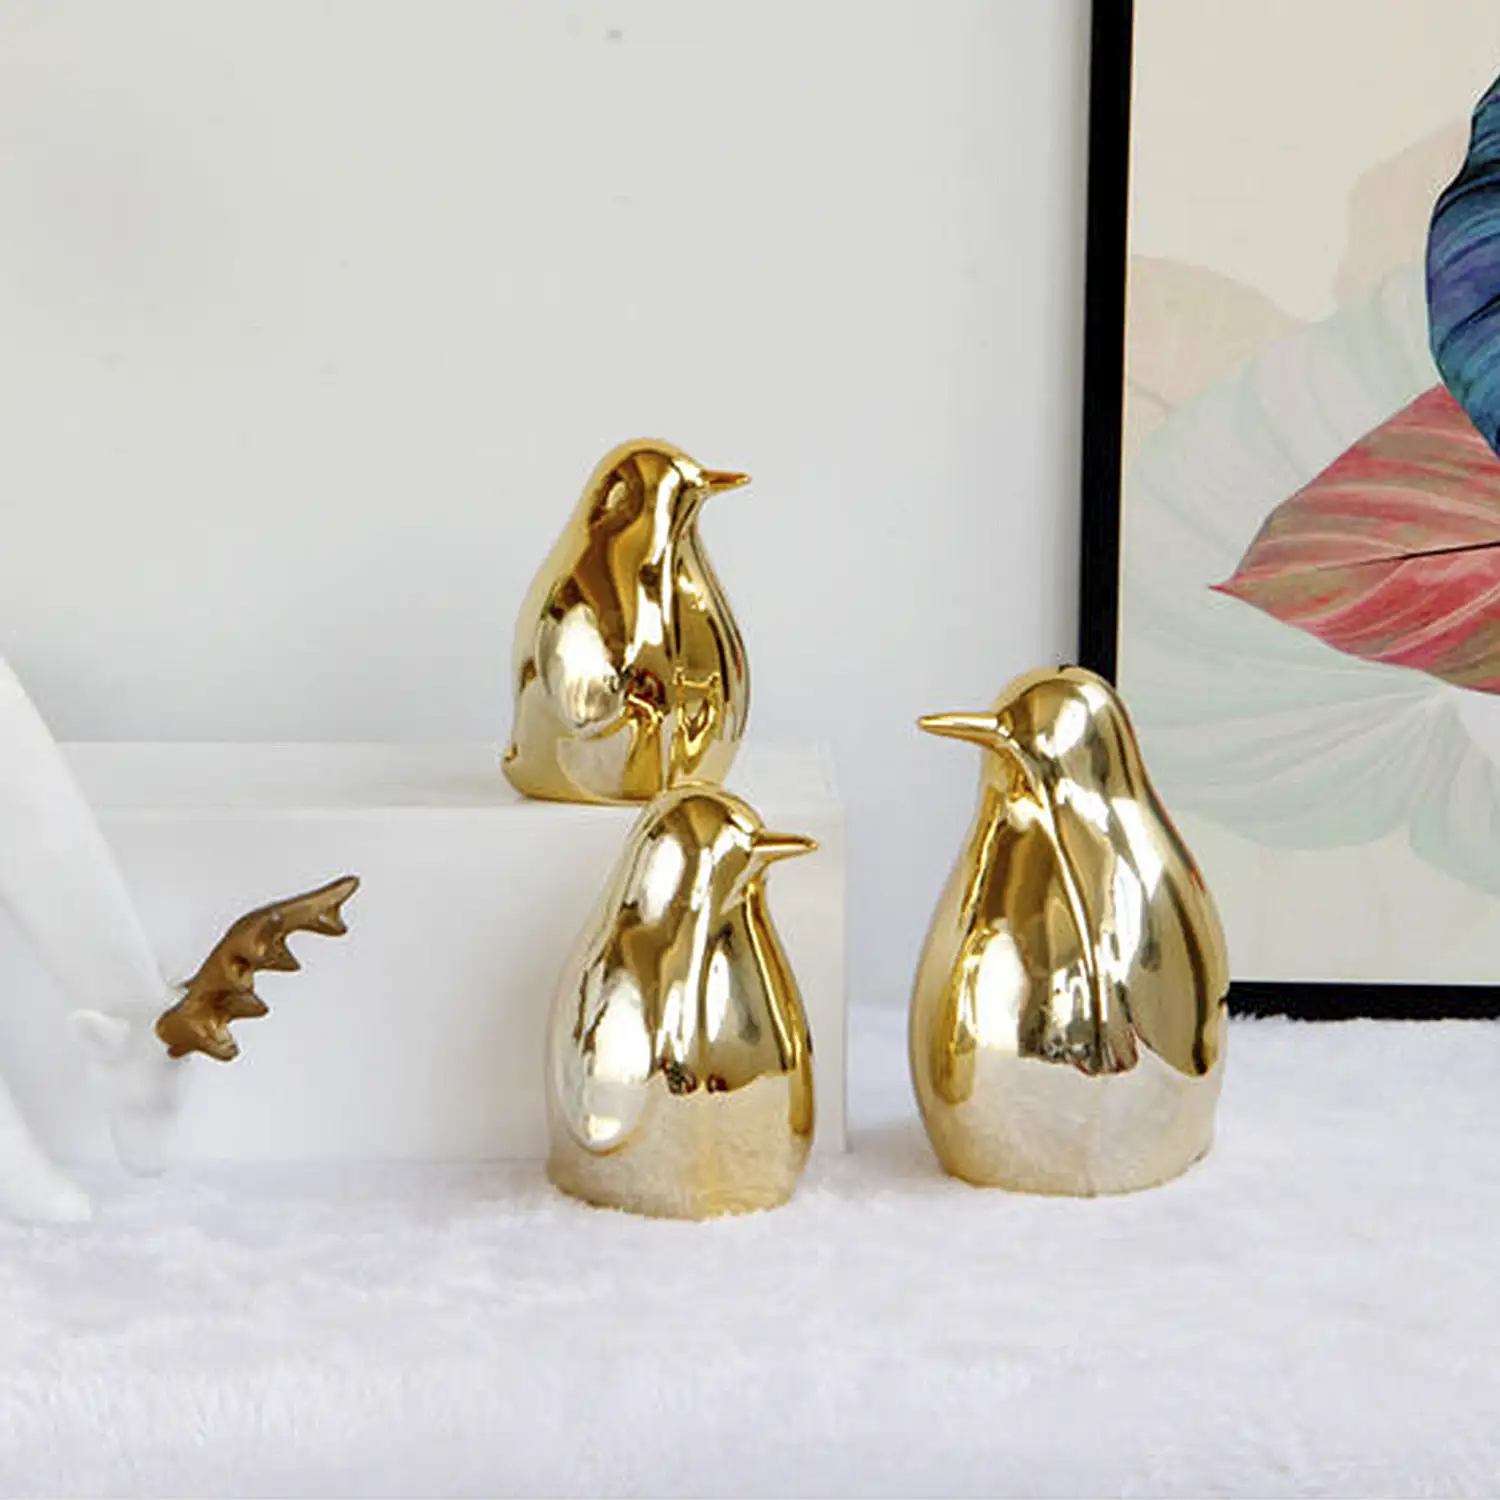 Set de 3 Piezas Figuras Decorativas de Porcelana Dorada Pinguinos